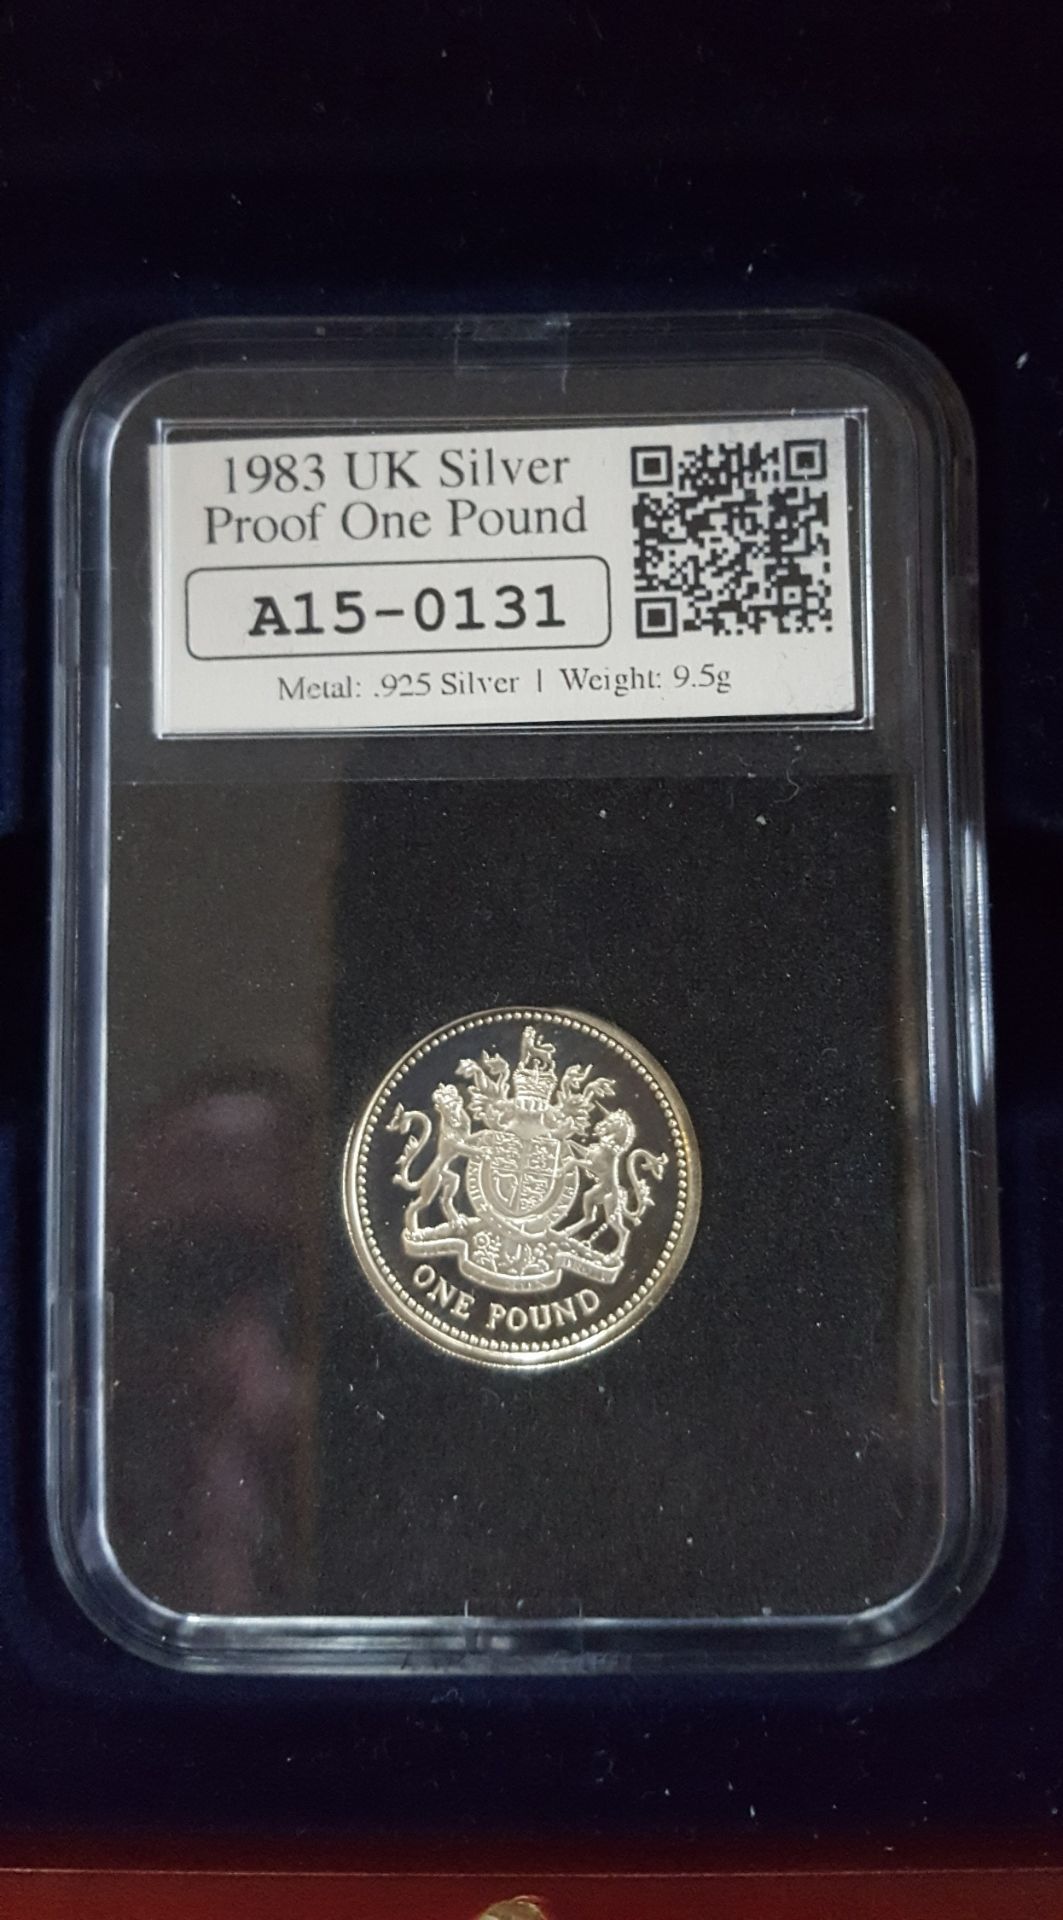 Collectable Coin 2012 UK Silver Britannia A06-0400 £2 Coin .958 Silver - Image 2 of 4